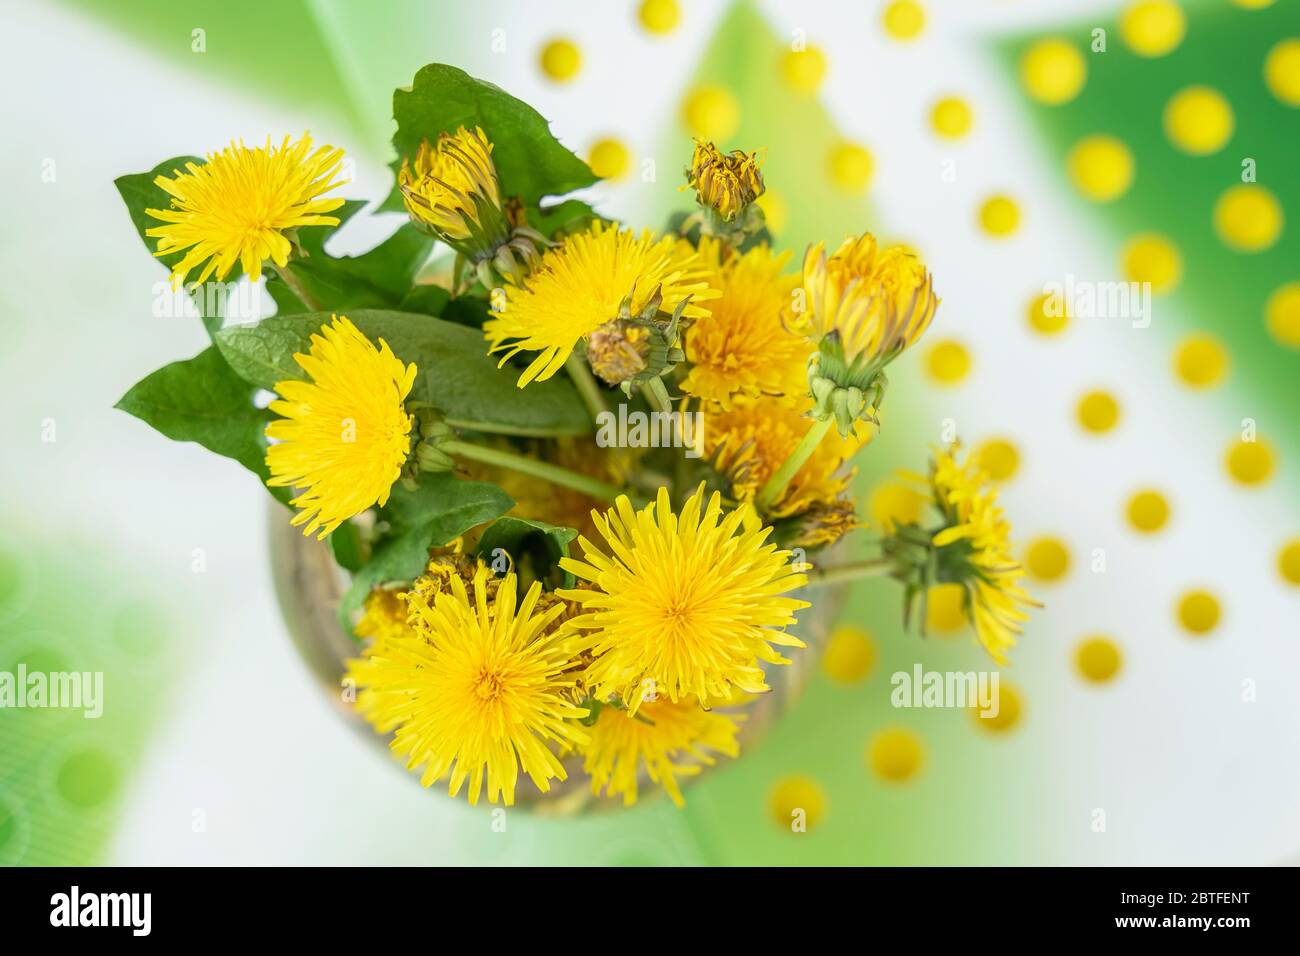 Bunte frische gelbe Löwenzahn Nahaufnahme, Draufsicht, hellen floralen Hintergrund, Konzept des Frühlings, Sommer, Feiertage und Geschenke Stockfoto